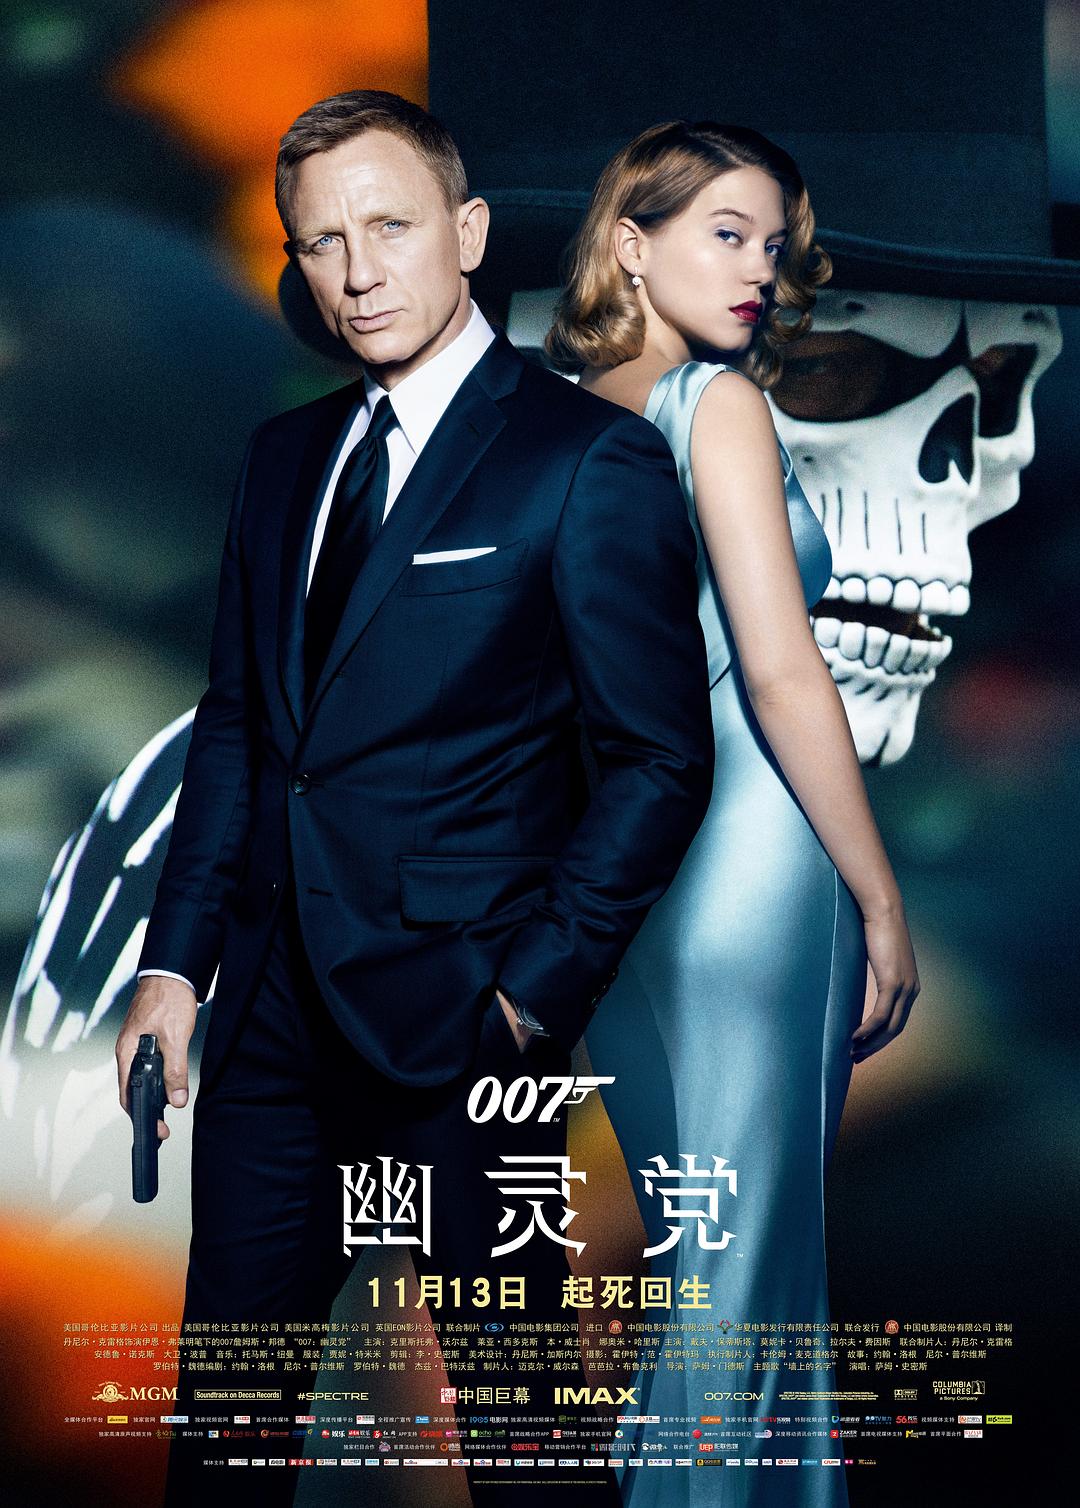 007:鬼魂党/007系列24:大破鬼魂危机 Spectre.2015.2160p.BluRay.REMUX.HEVC.DTS-HD.MA.7.1-FGT 54.55GB-1.png